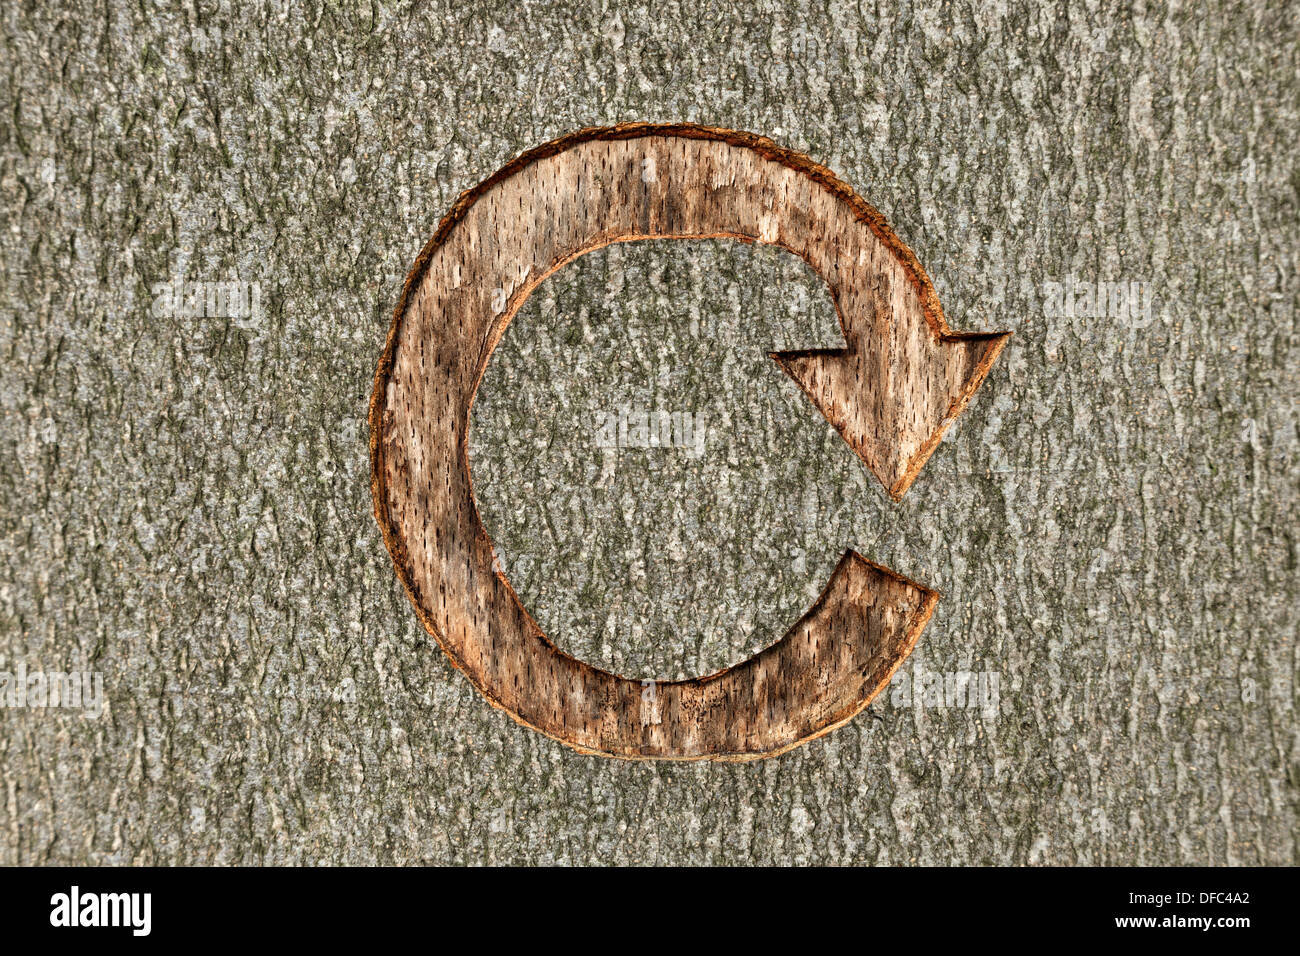 El símbolo de reciclado tallada en un árbol en bosques. Foto de stock